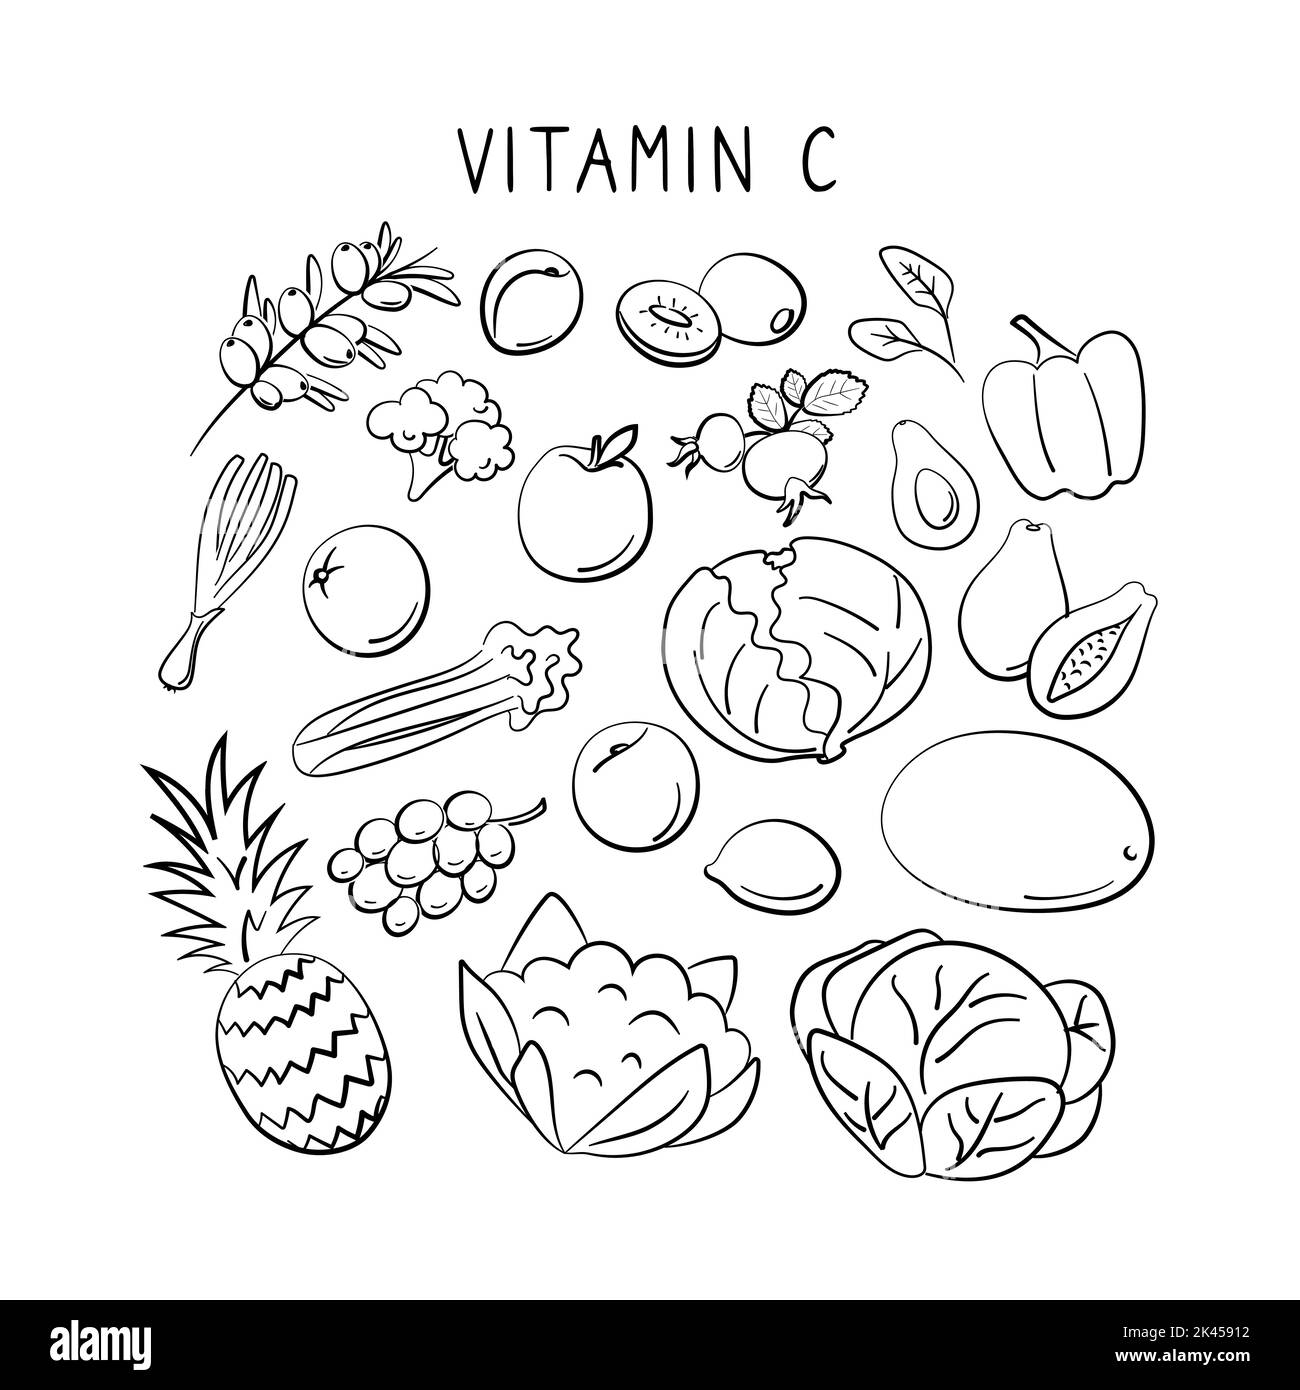 Vitamine C acide ascorbique. Groupes de produits sains contenant des vitamines. Ensemble de fruits, légumes, viandes, poissons et produits laitiers Illustration de Vecteur